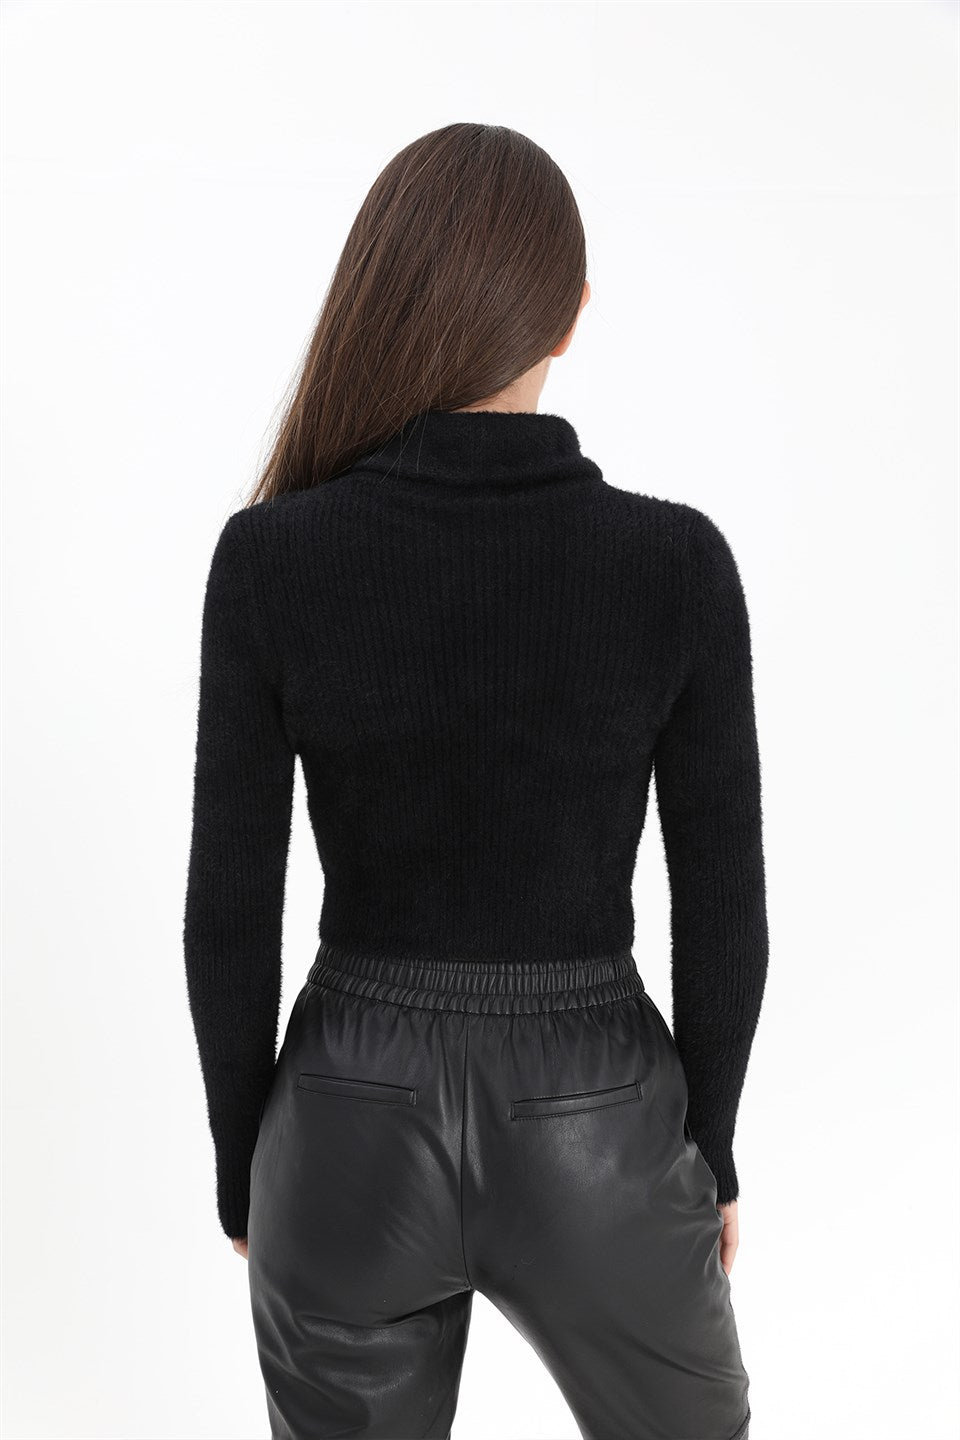 Women's Zipper Corduroy Knitwear Sweater - Black - STREETMODE™